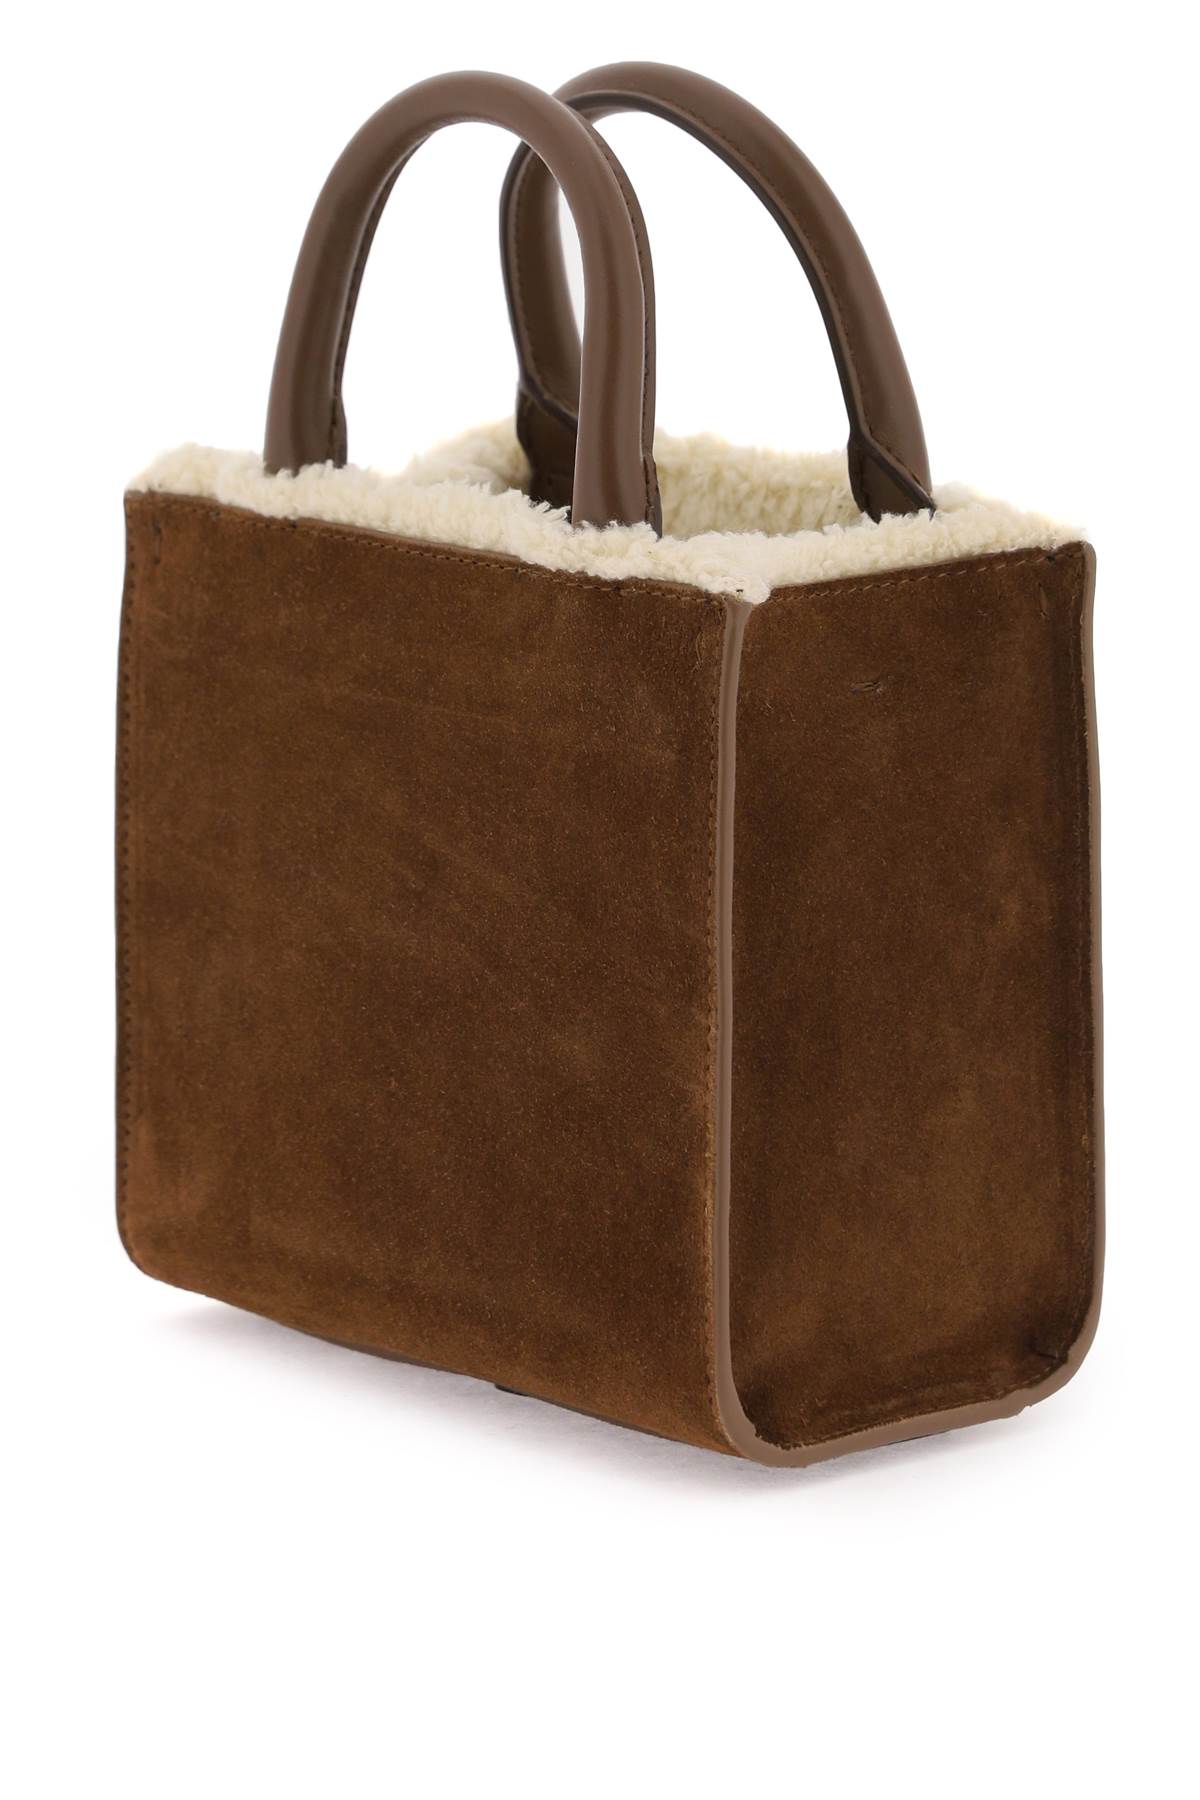 Luxurious Shearling Tote Bag for Fashion-forward Women